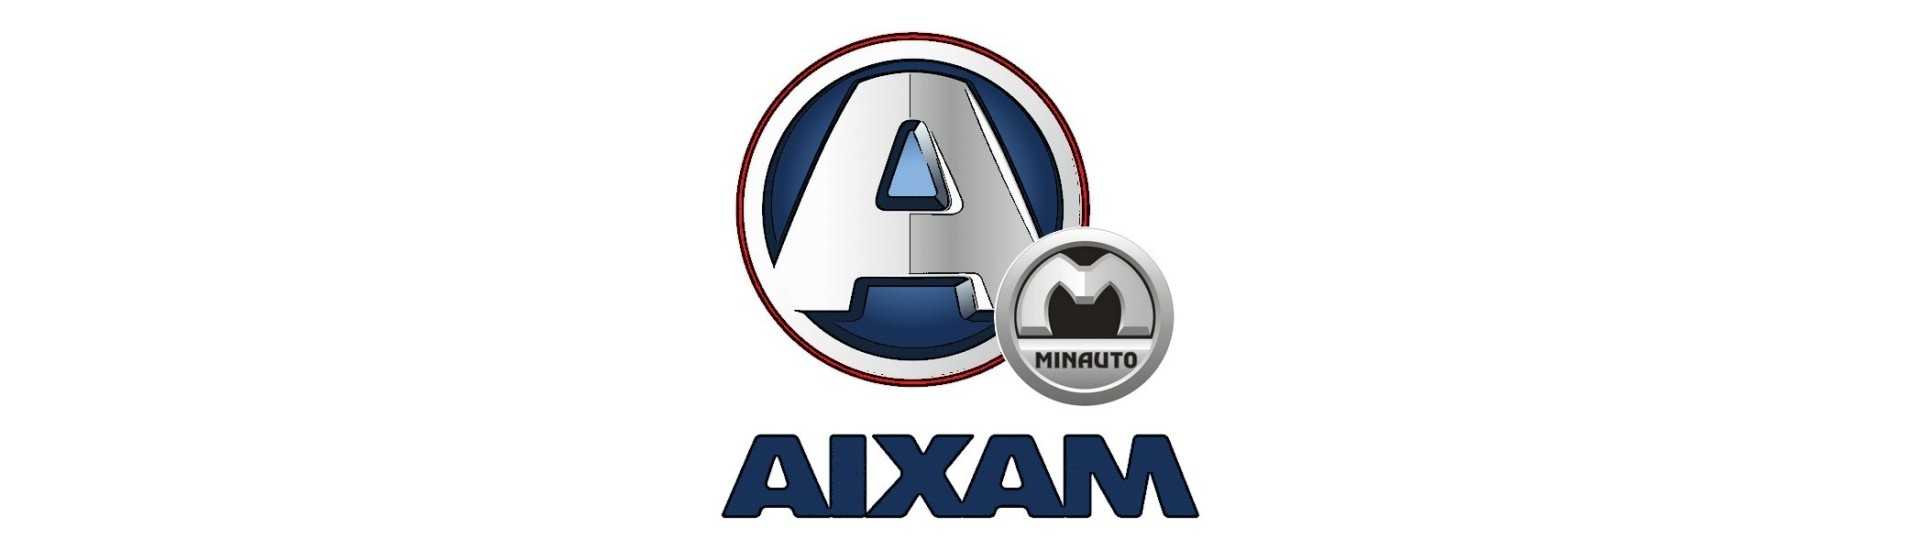 Geschwindigkeitsbox zum besten Preis Auto ohne Lizenz Aixam Minauto